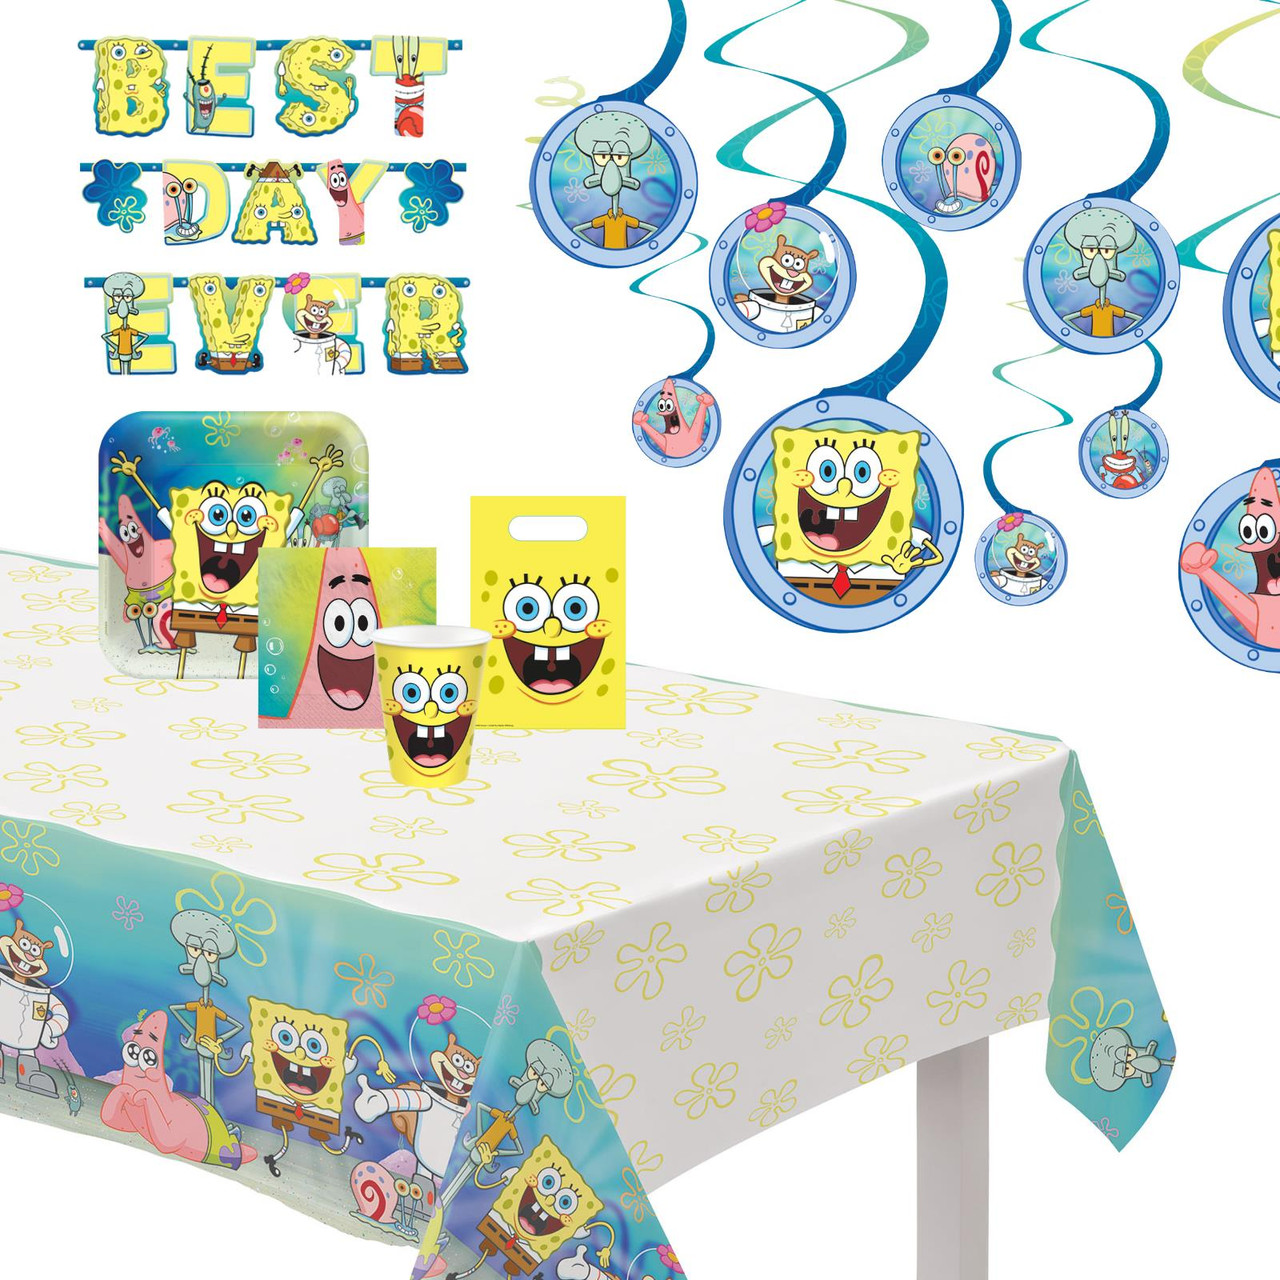 Official SpongeBob SquarePants Party Supplies & Decorations